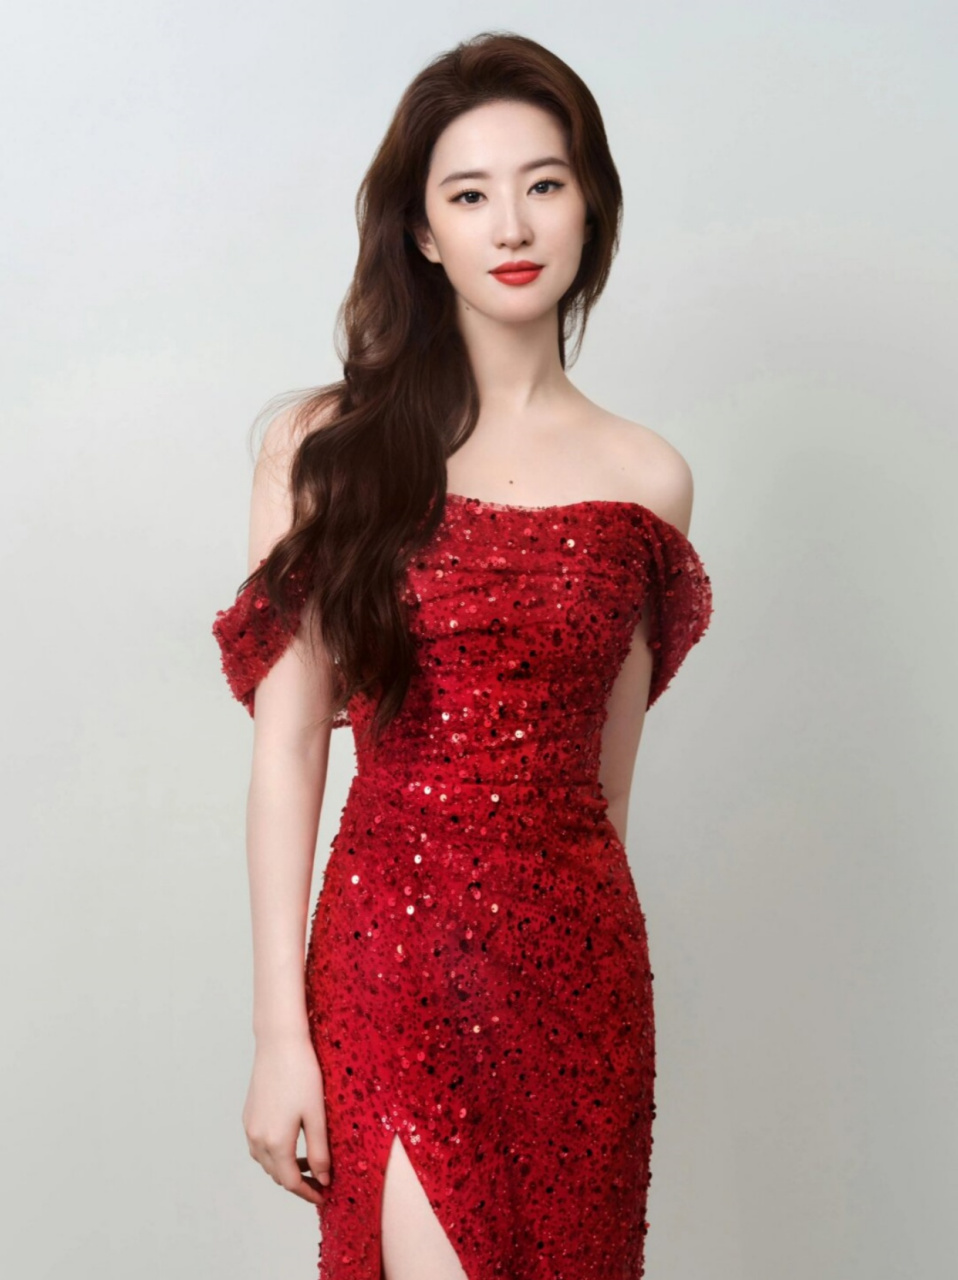 刘亦菲开叉抹胸红裙造型,又美出新高度了~  刘亦菲在最新一组工作室美